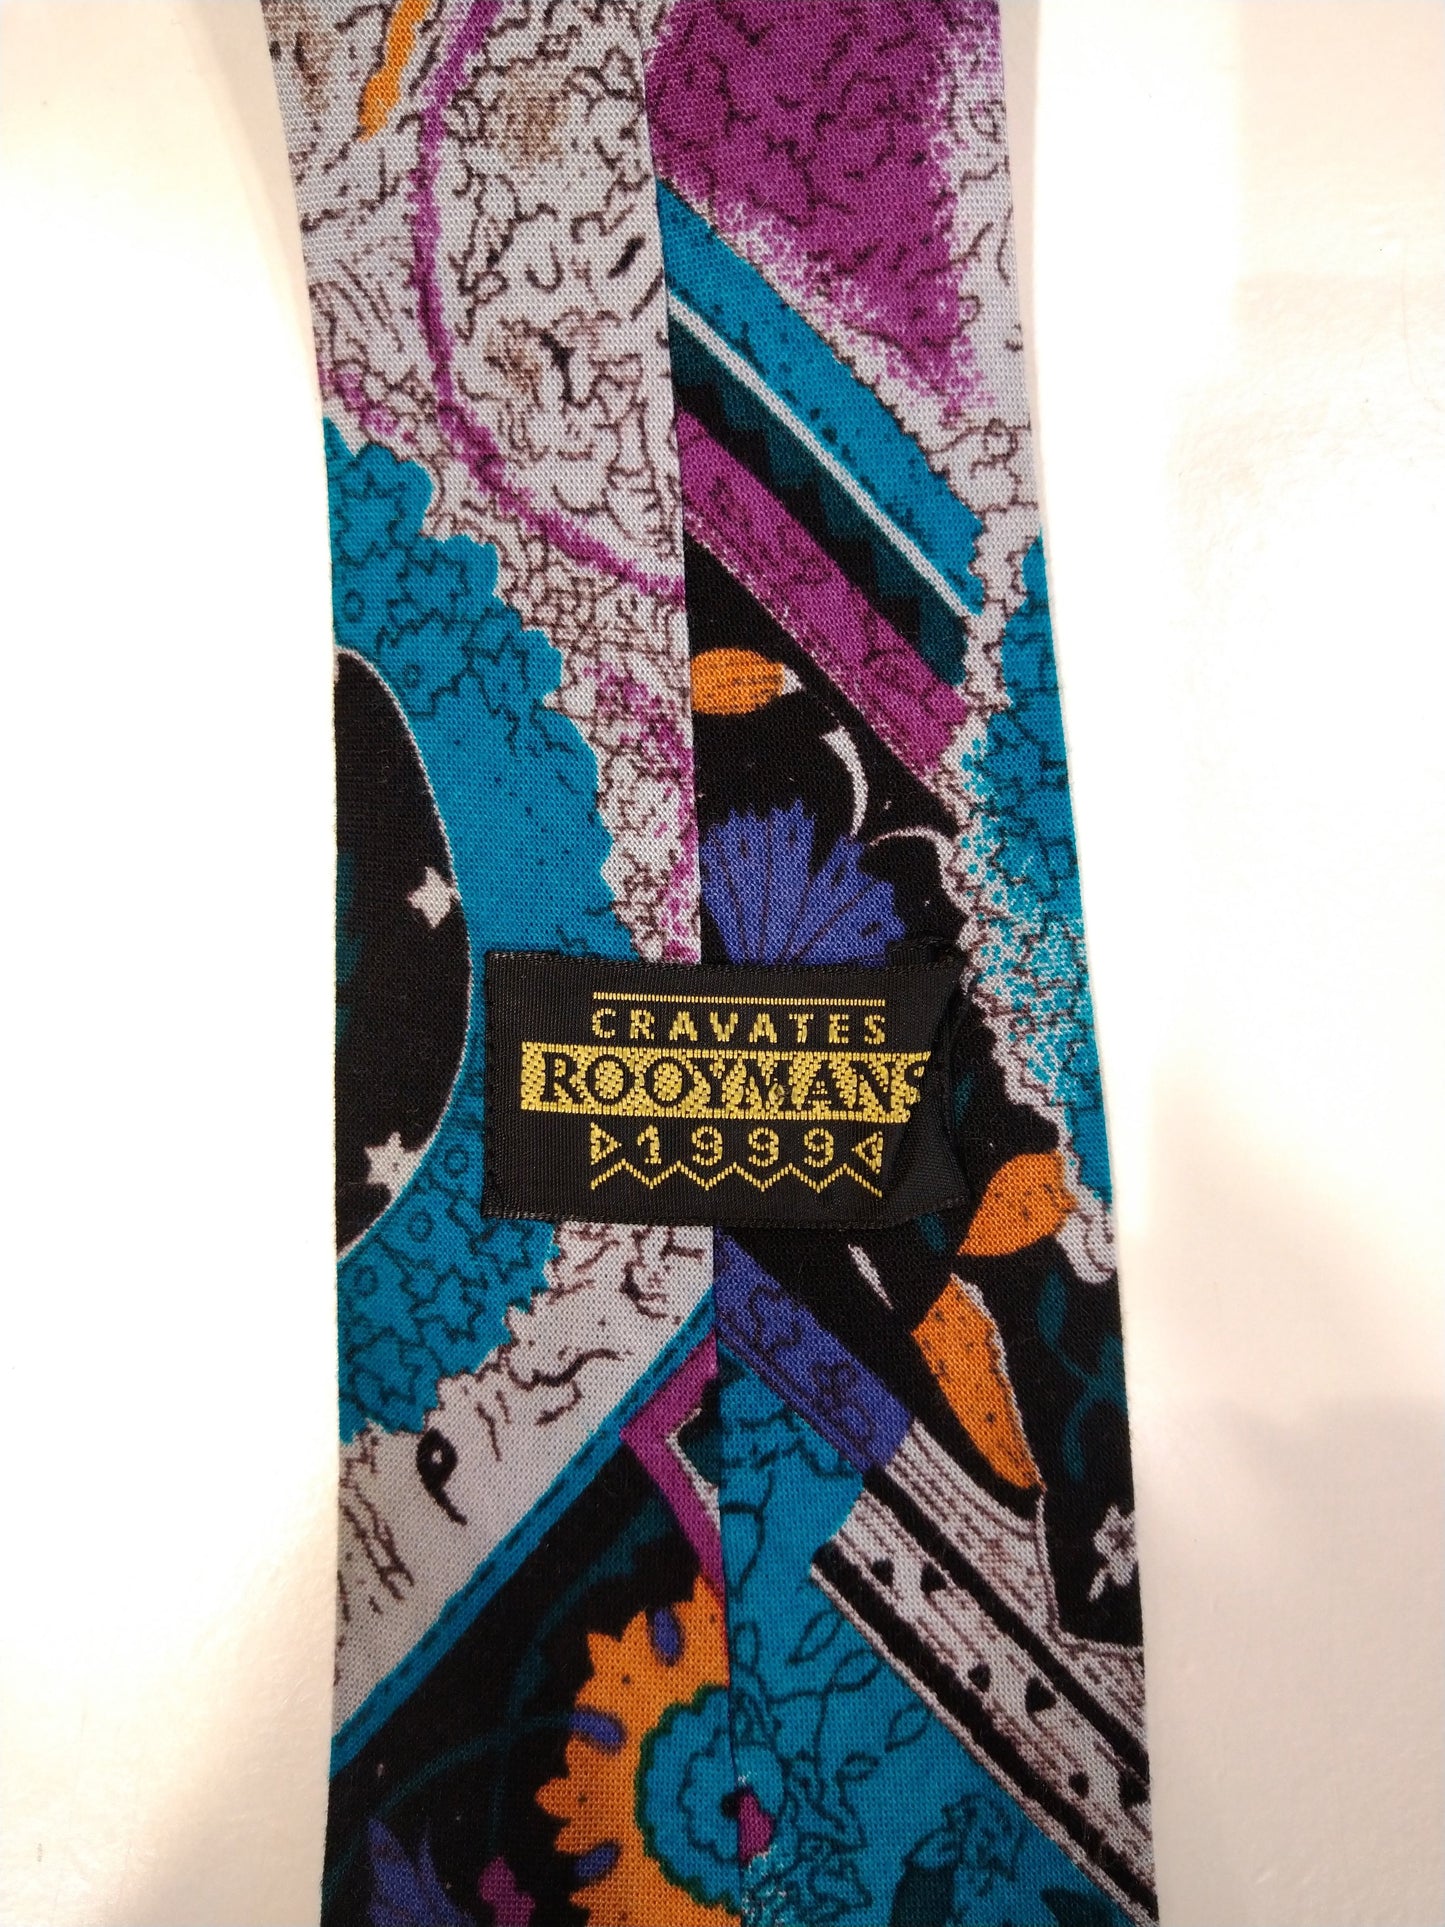 Cravates Rooymans Super colorful tie.